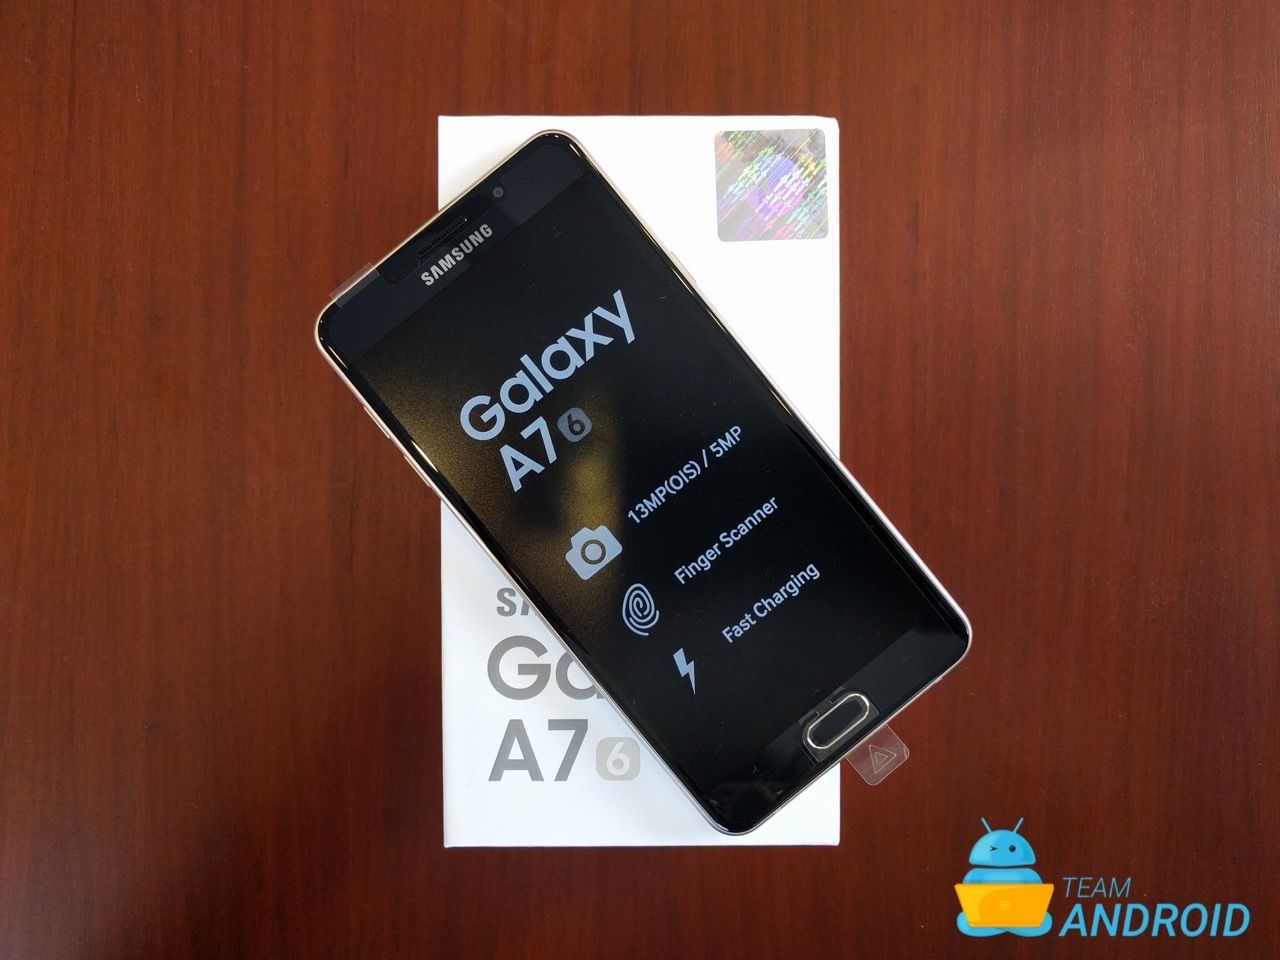 Galaxy-A7-2016